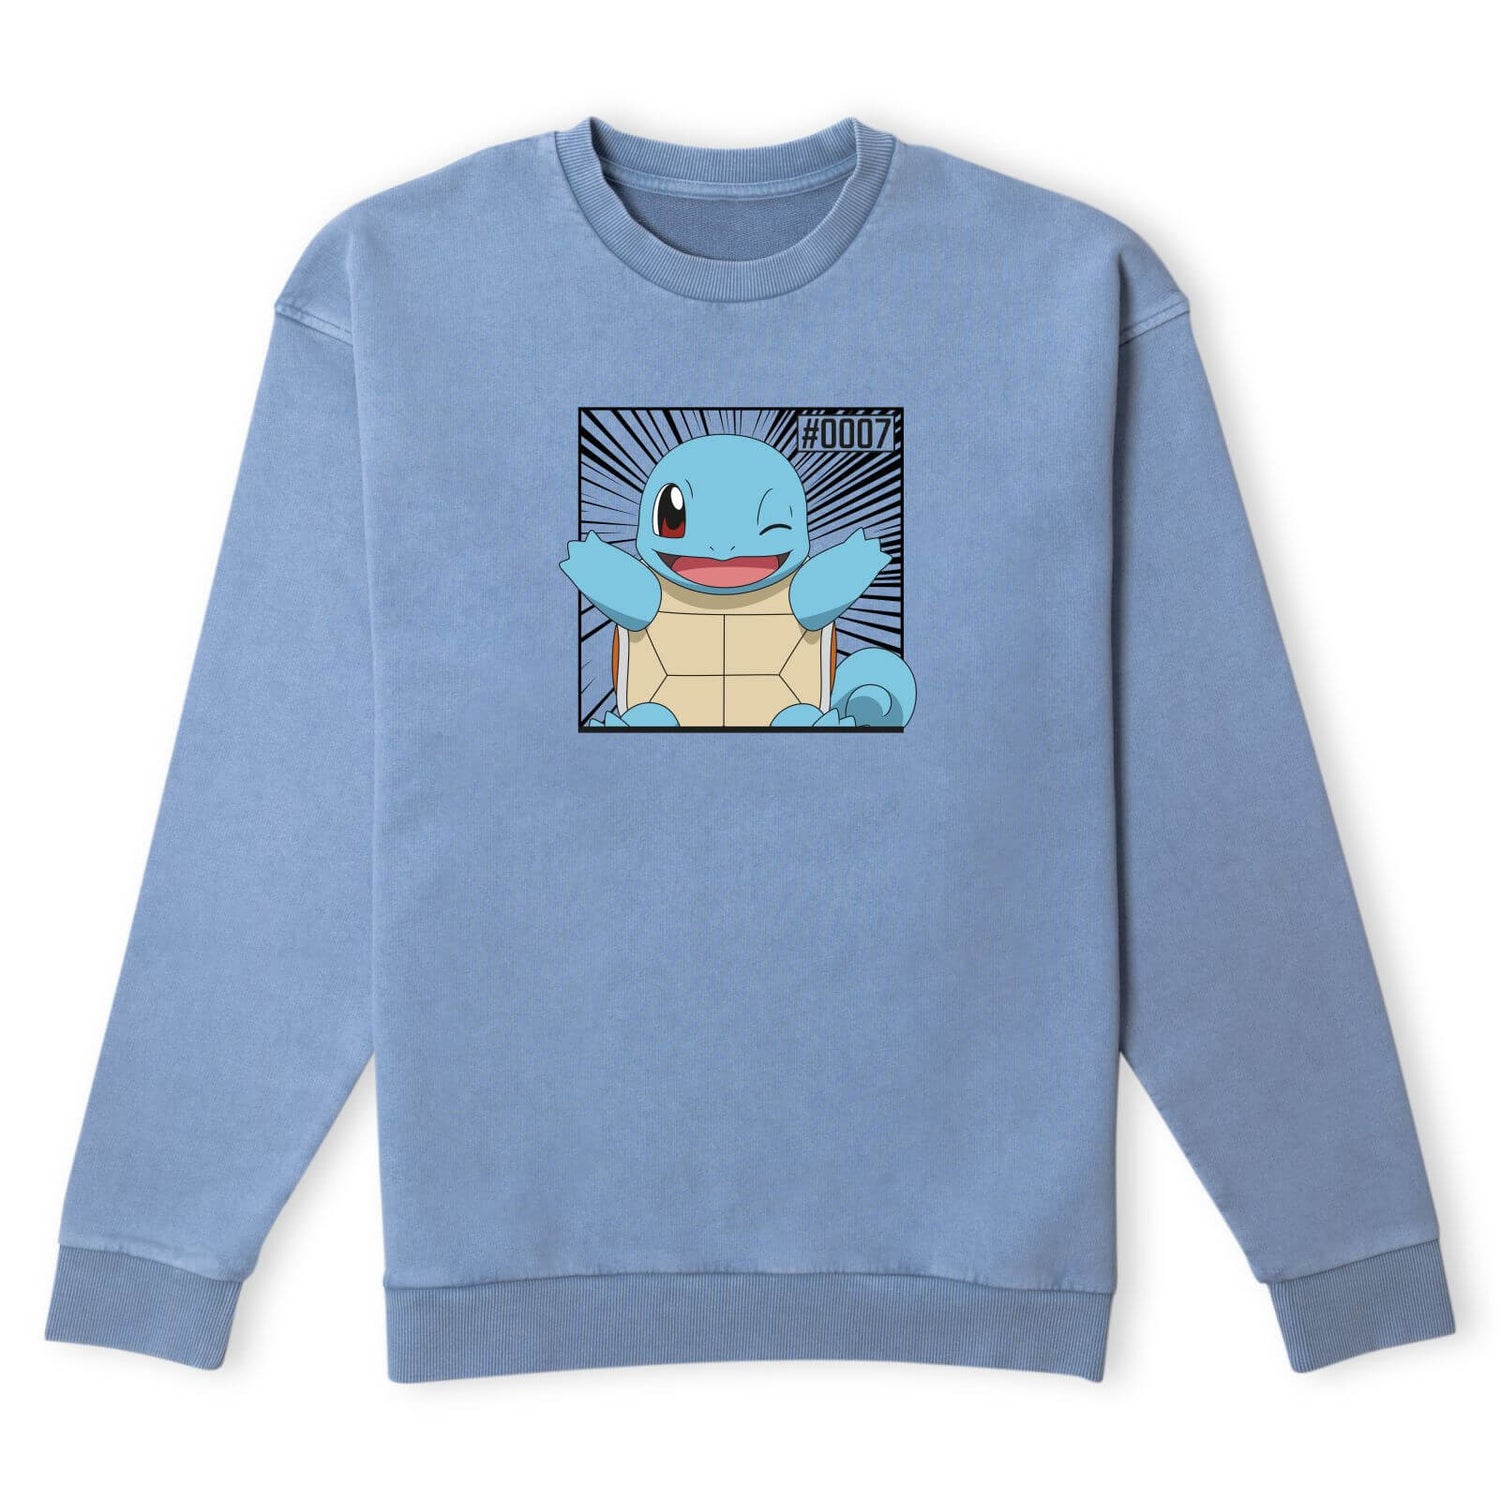 Pokémon Pokédex Squirtle #0007 Sweatshirt - Denim Blue Acid Wash